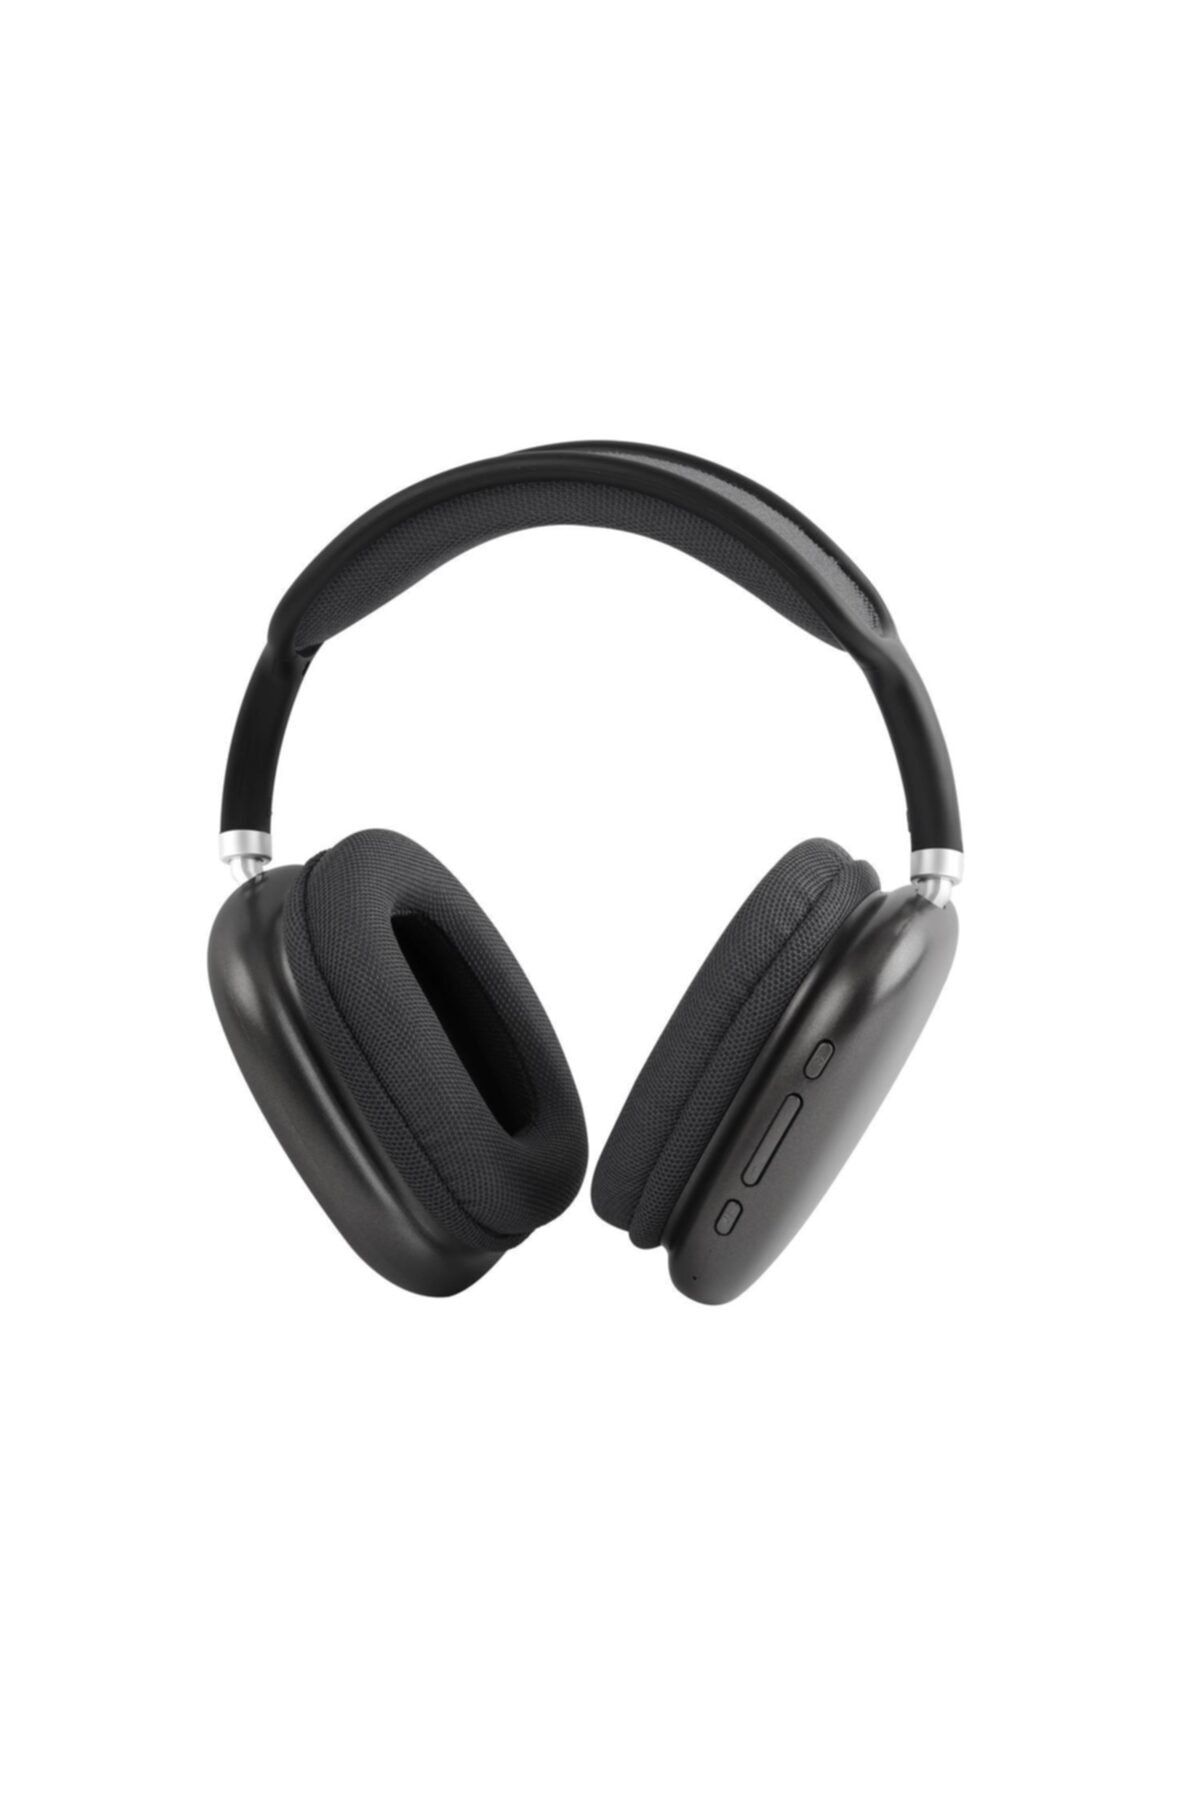 Polosmart Fs54 Soundpro Max Kulaküstü Kablosuz Kulaklık Gri